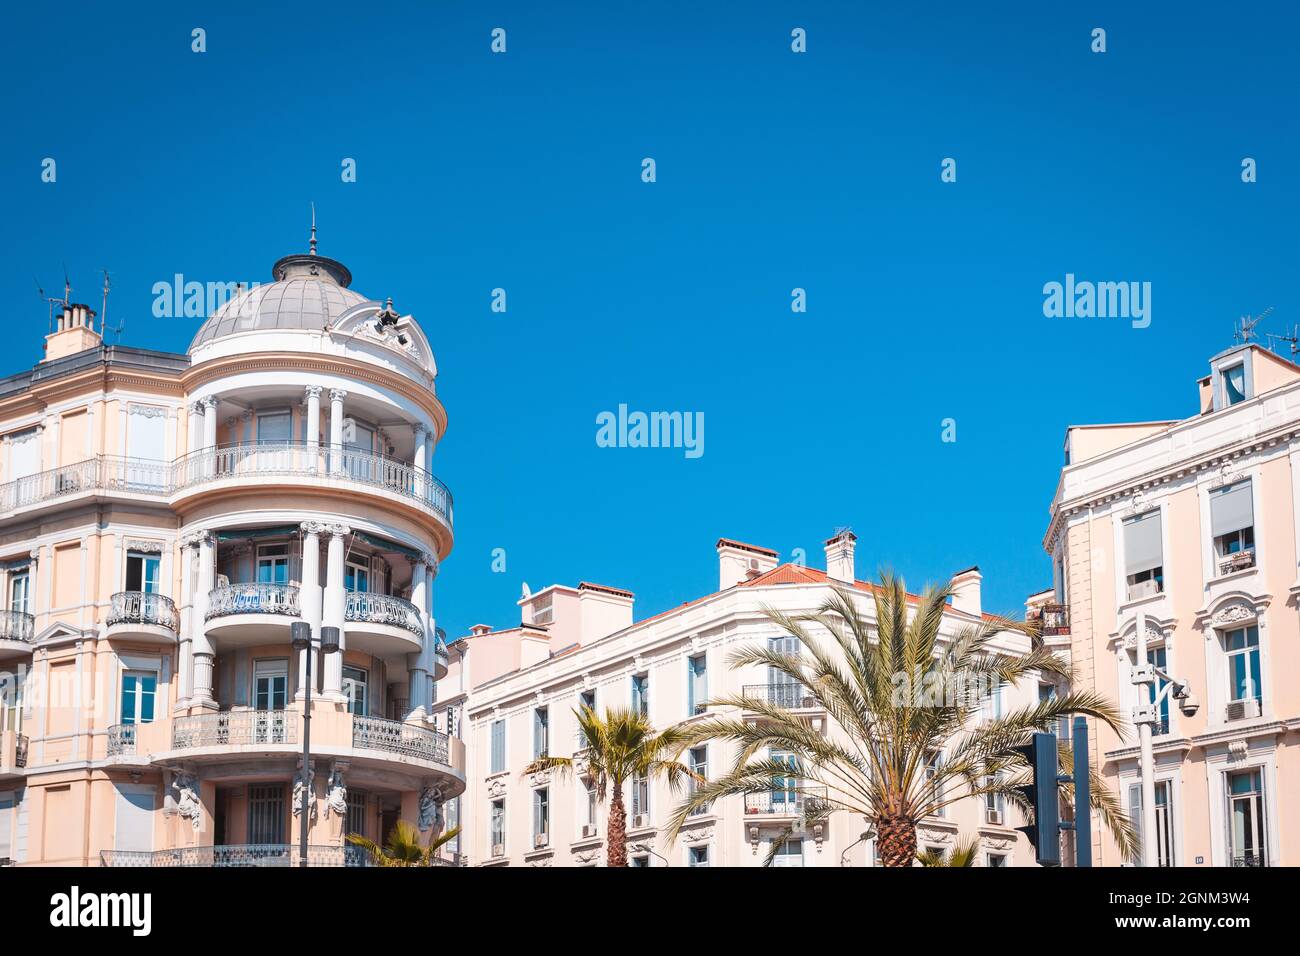 Elegante Architektur im Jugendstil in Cannes am Boulevard Carnot, Provence, Frankreich Stockfoto